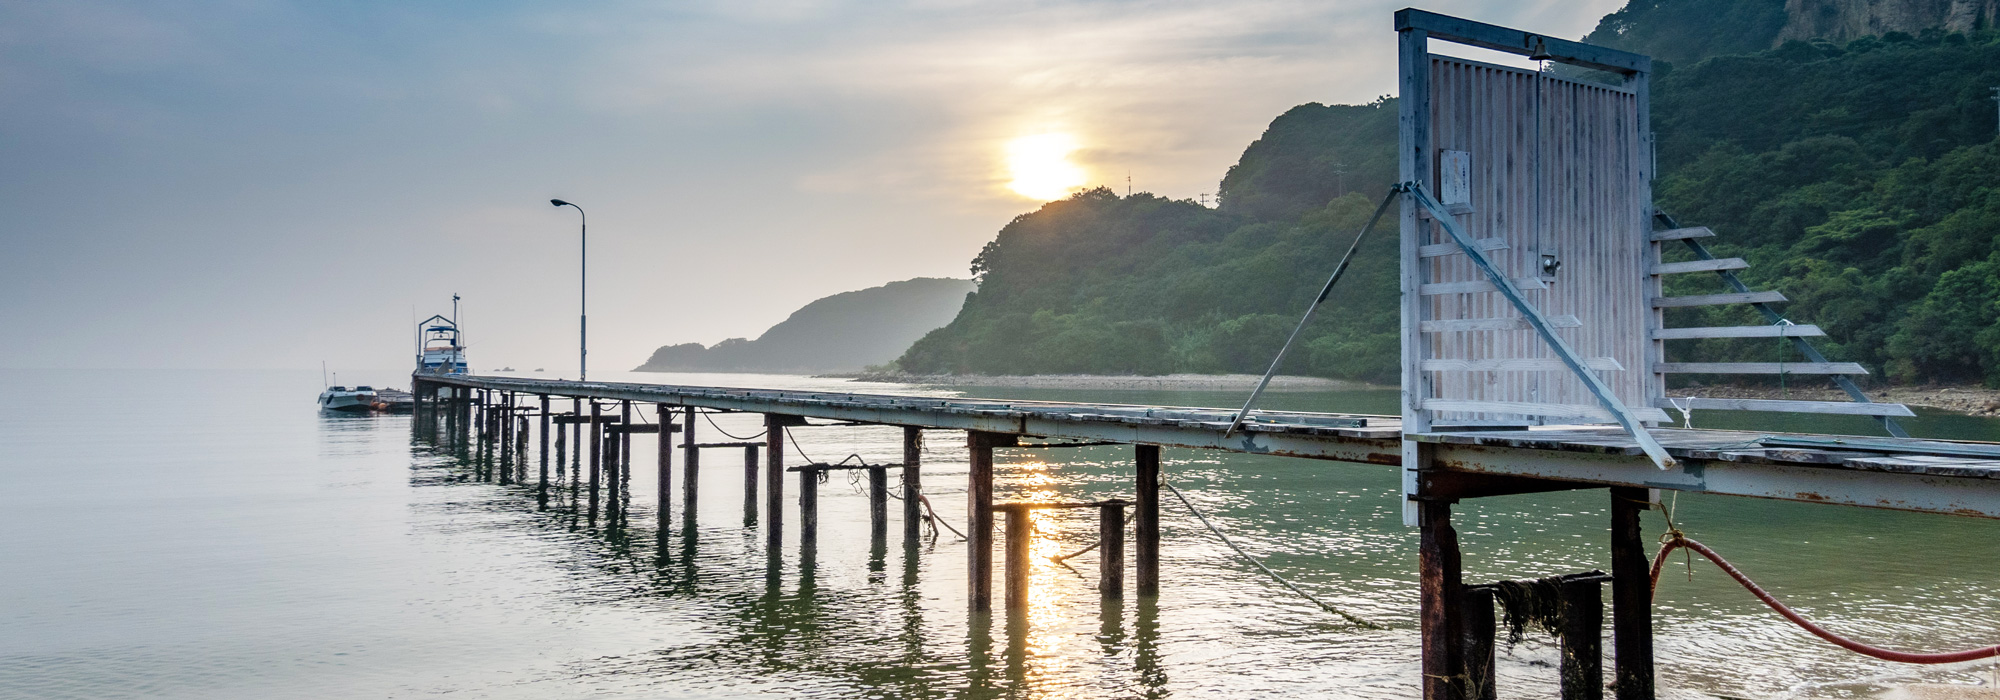 澄んだ空気と共に青瀬戸内海の離島・香川県の小豆島の海でクルージング体験をしよう